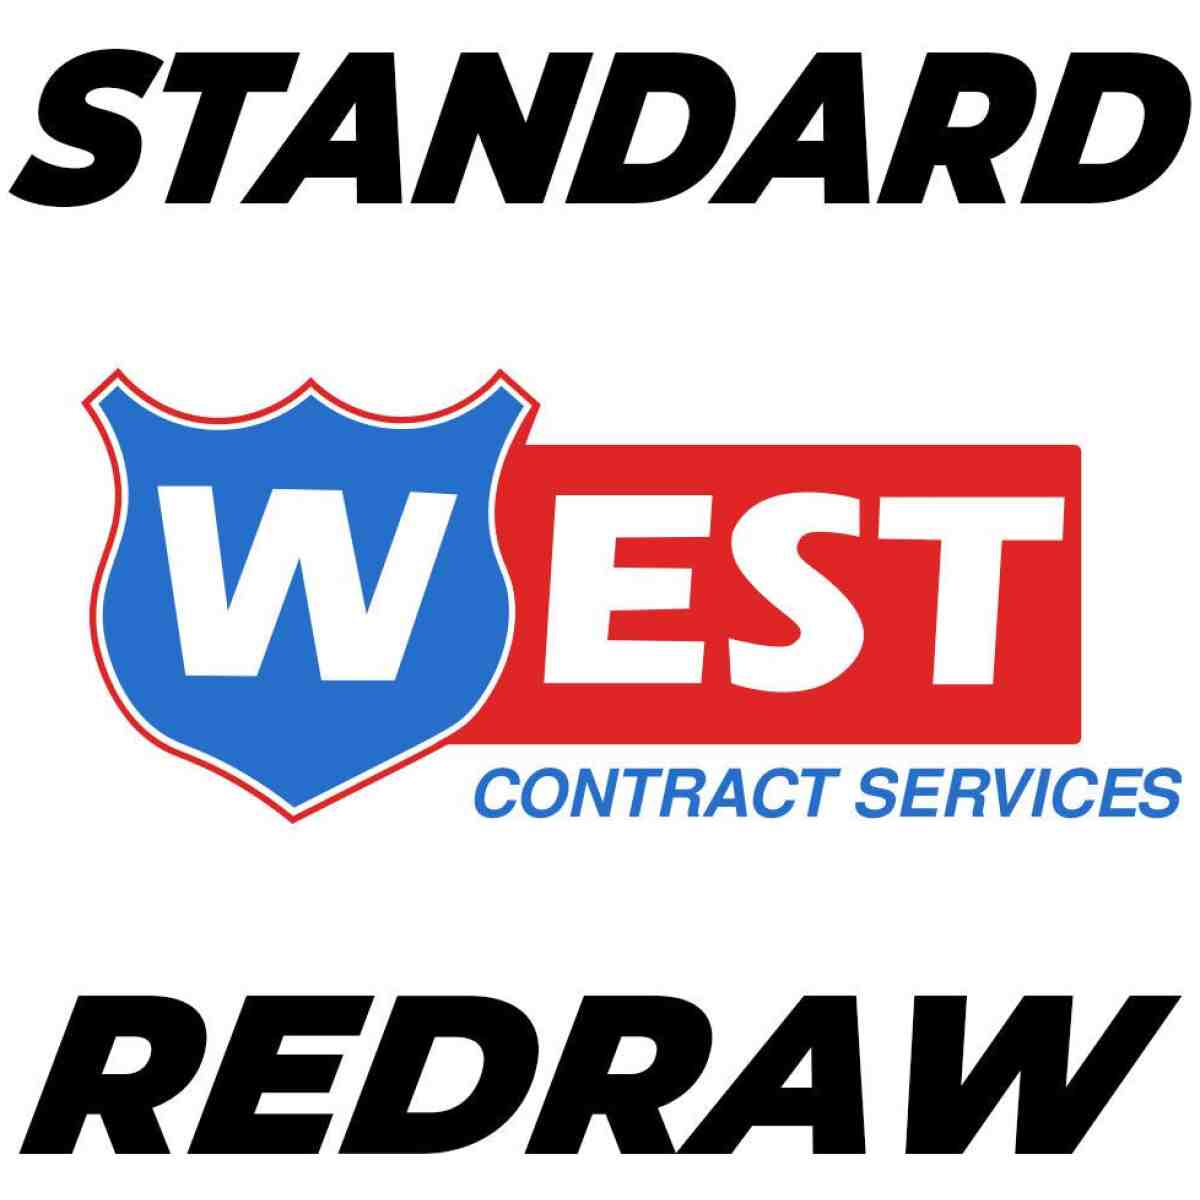 Standard Vector Redraw